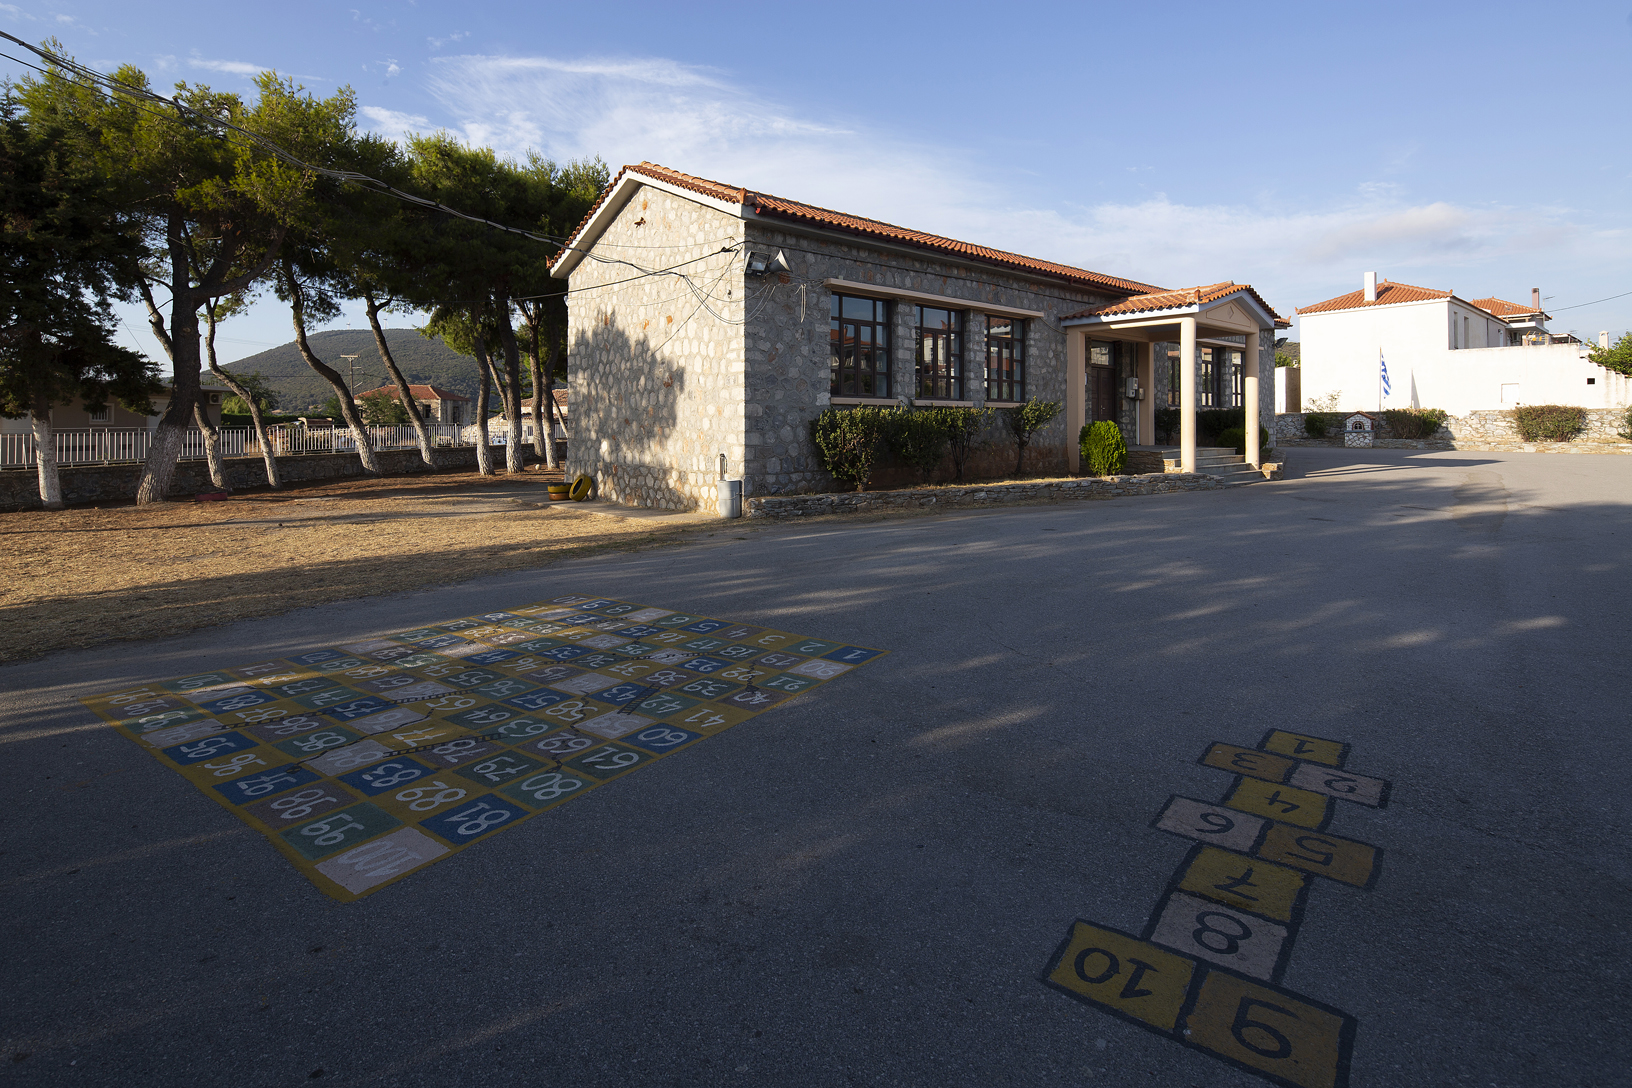 Δημοτικό σχολείο, χωριό Ζάρακες. Φωτογραφία: ©Βασίλης Συκάς, για τον Δήμο Κύμης-Αλιβερίου